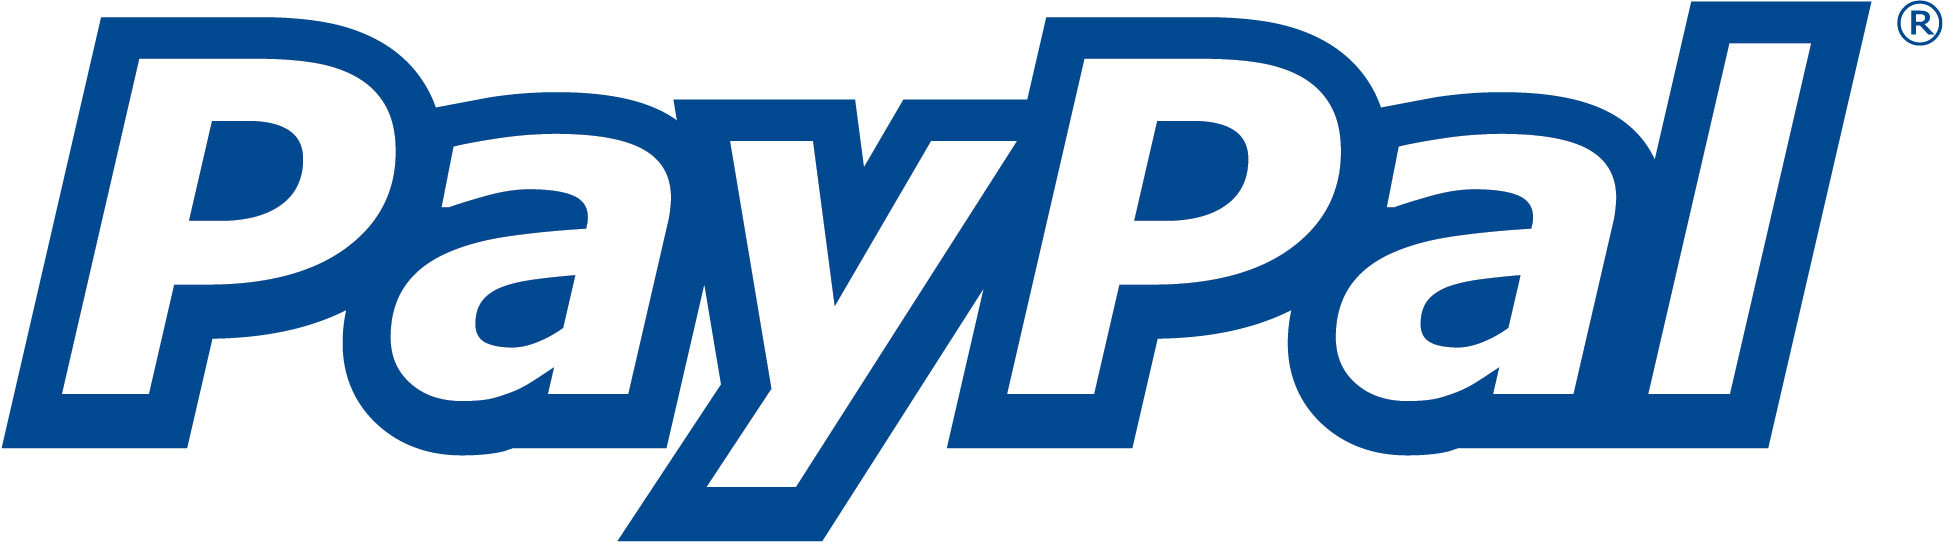 Image Of Paypal Logos